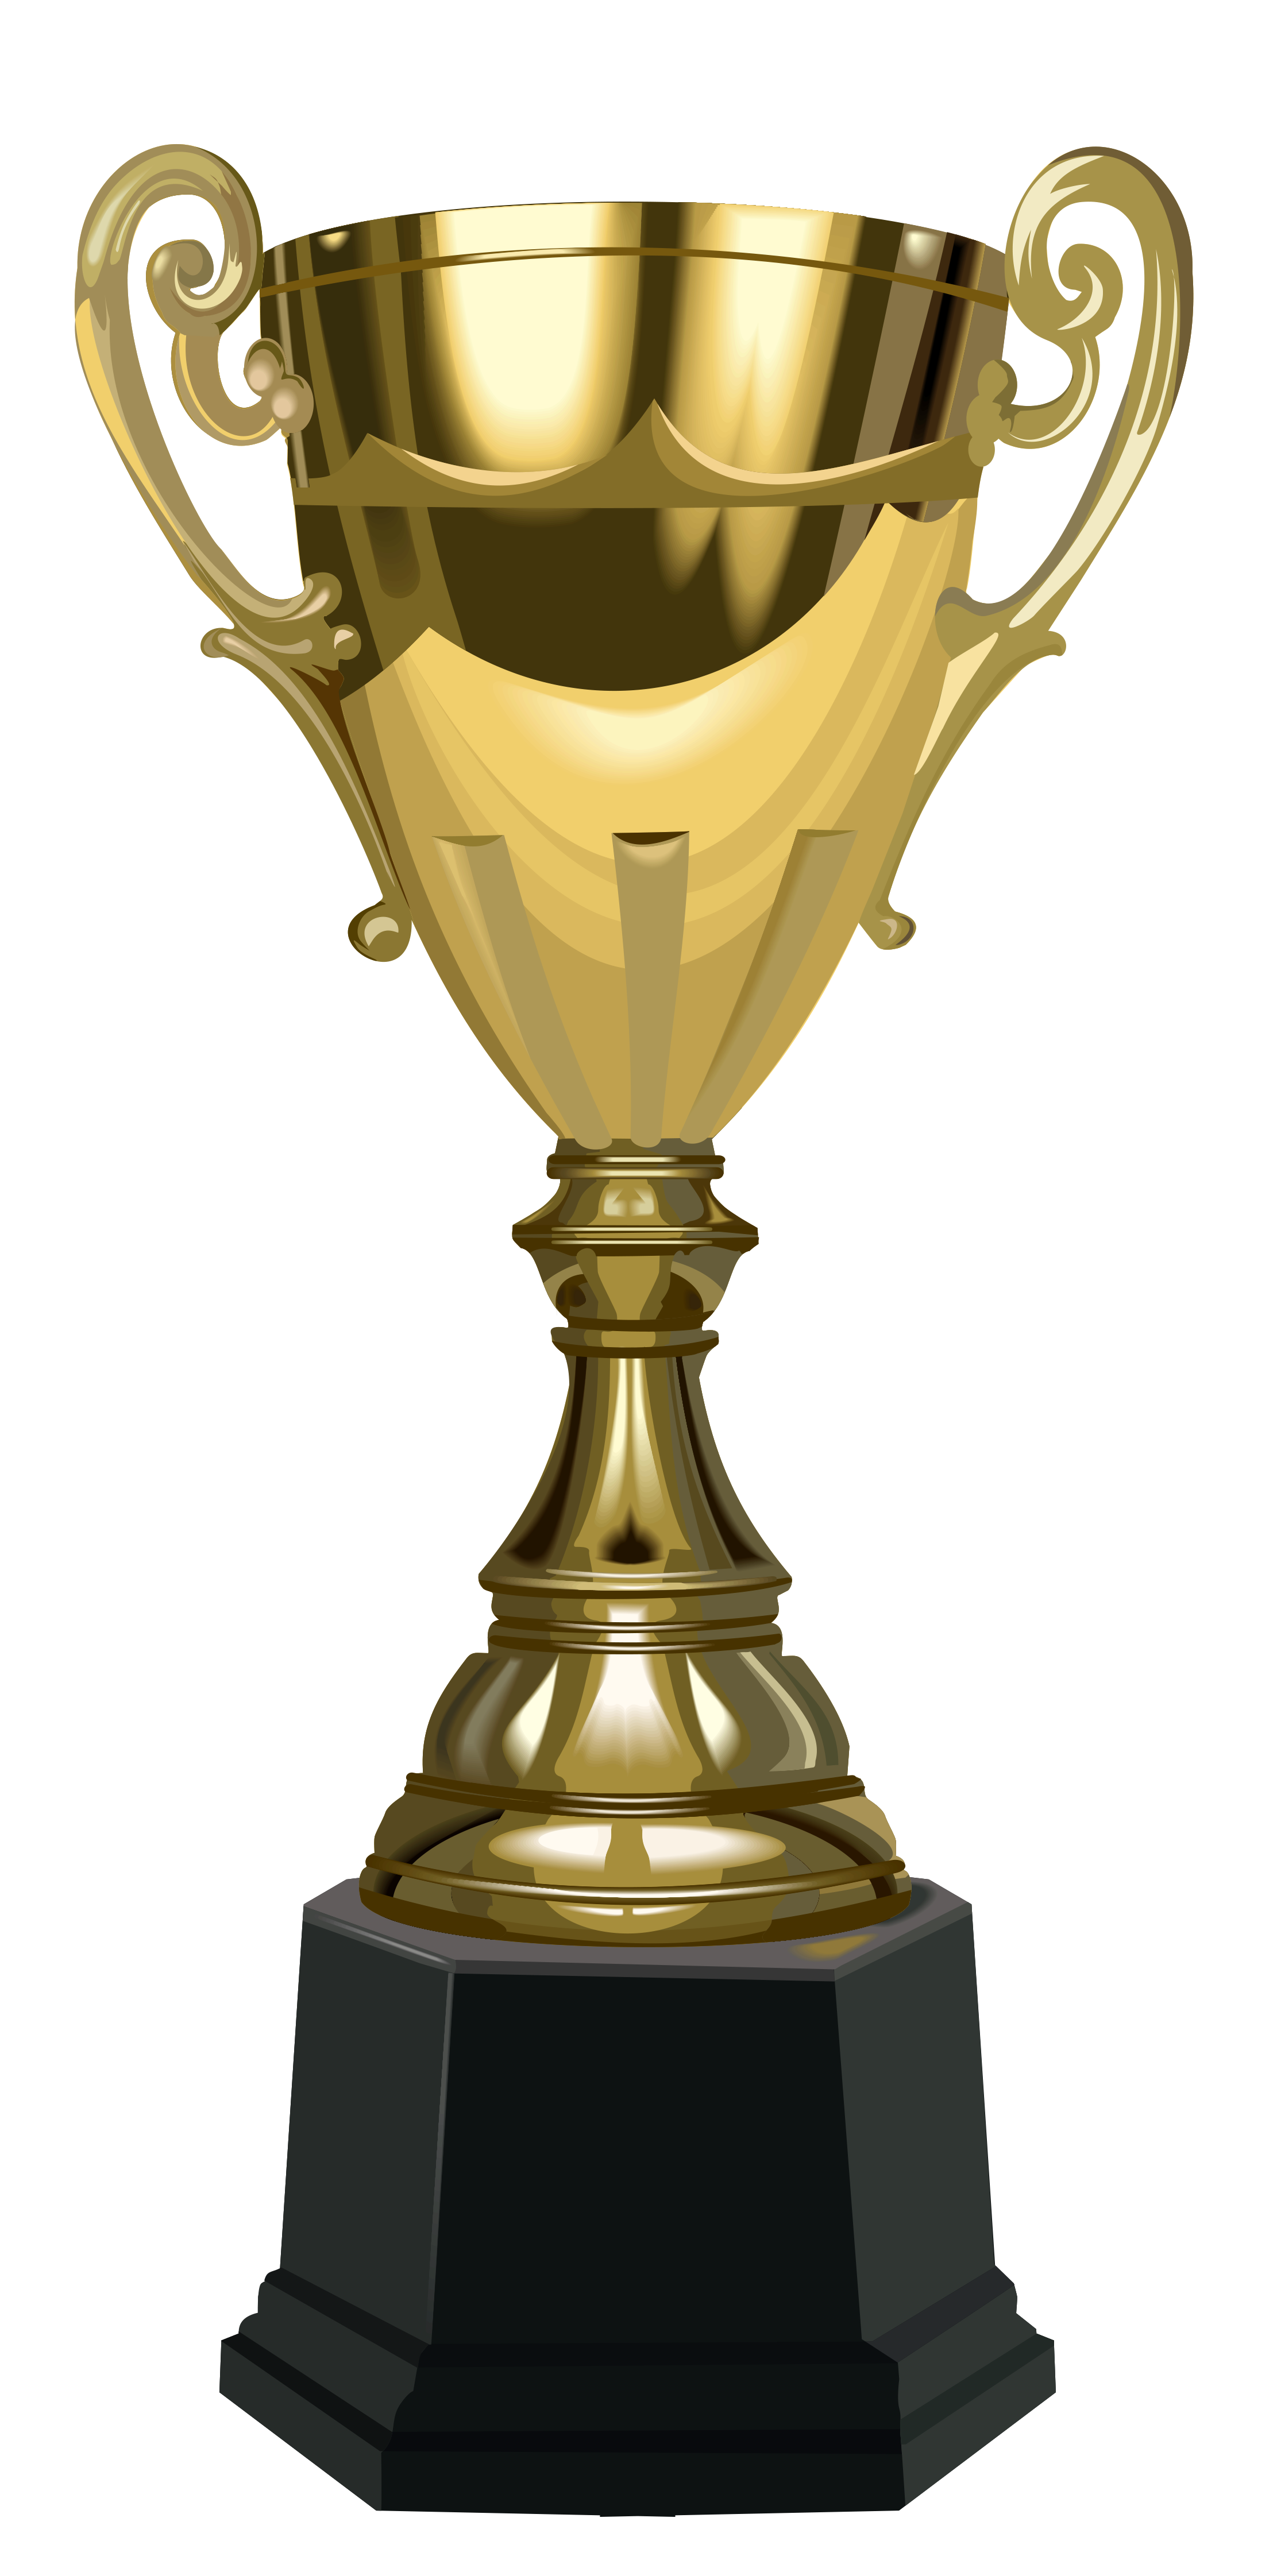 Prize clipart golden trophy, Prize golden trophy Transparent FREE for